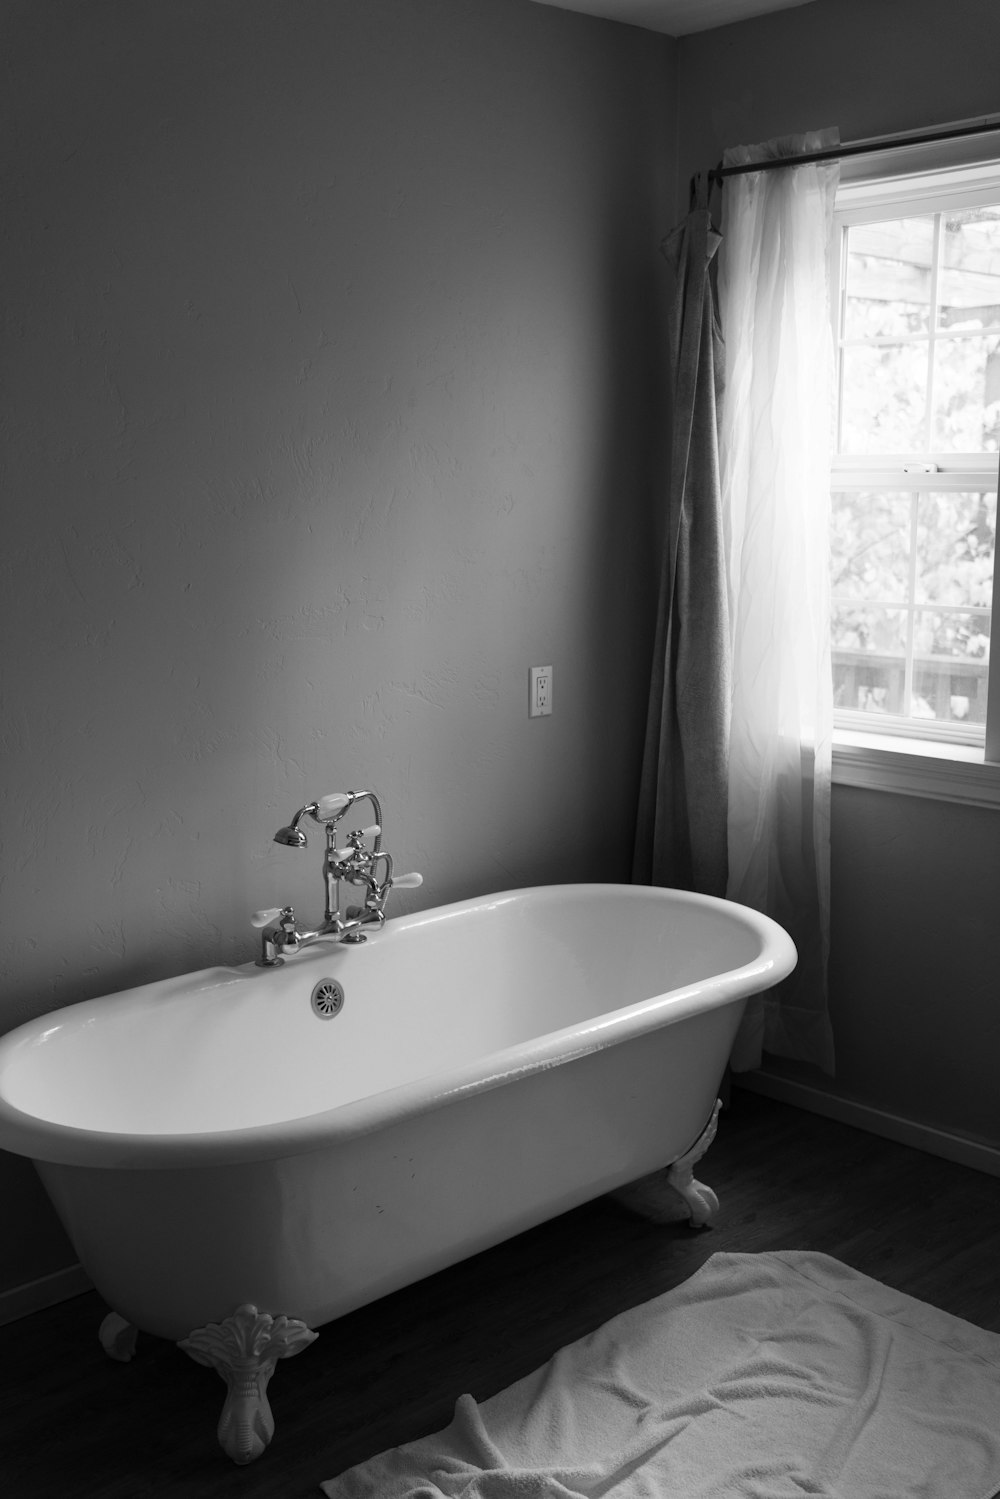 vasca da bagno in ceramica bianca all'interno della stanza